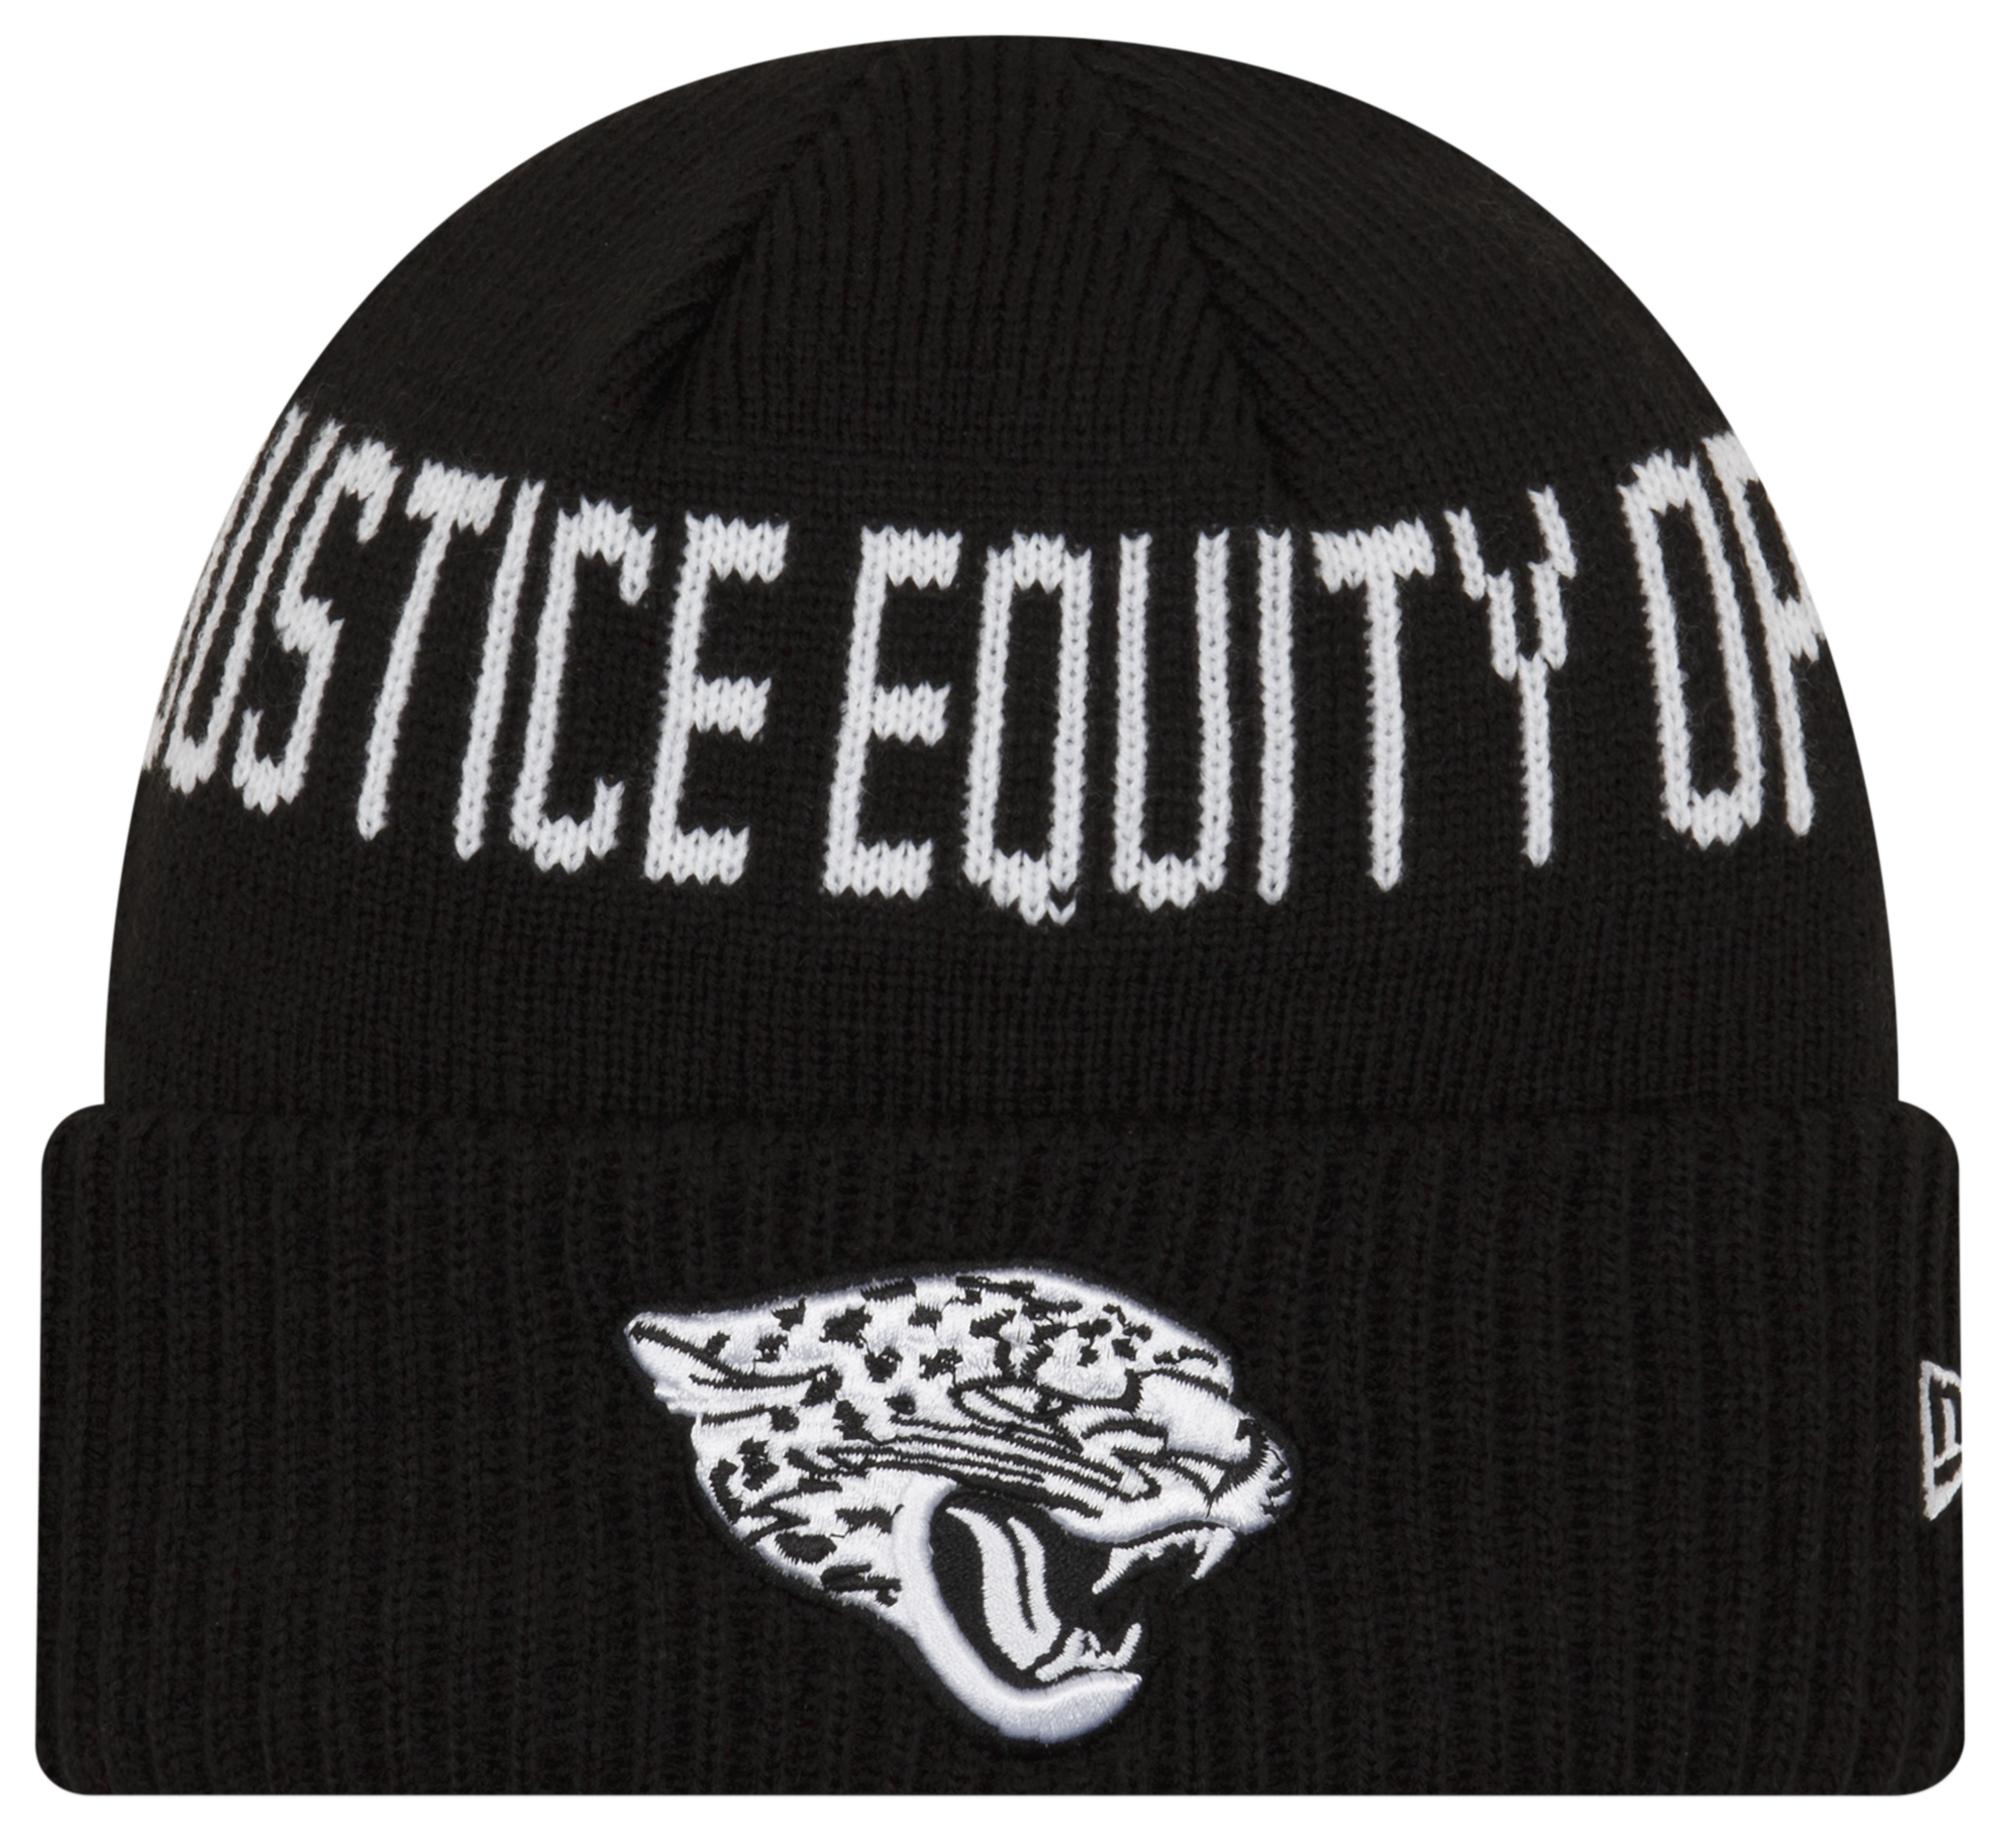 New Era Jaguars Social Justice Knit Cap